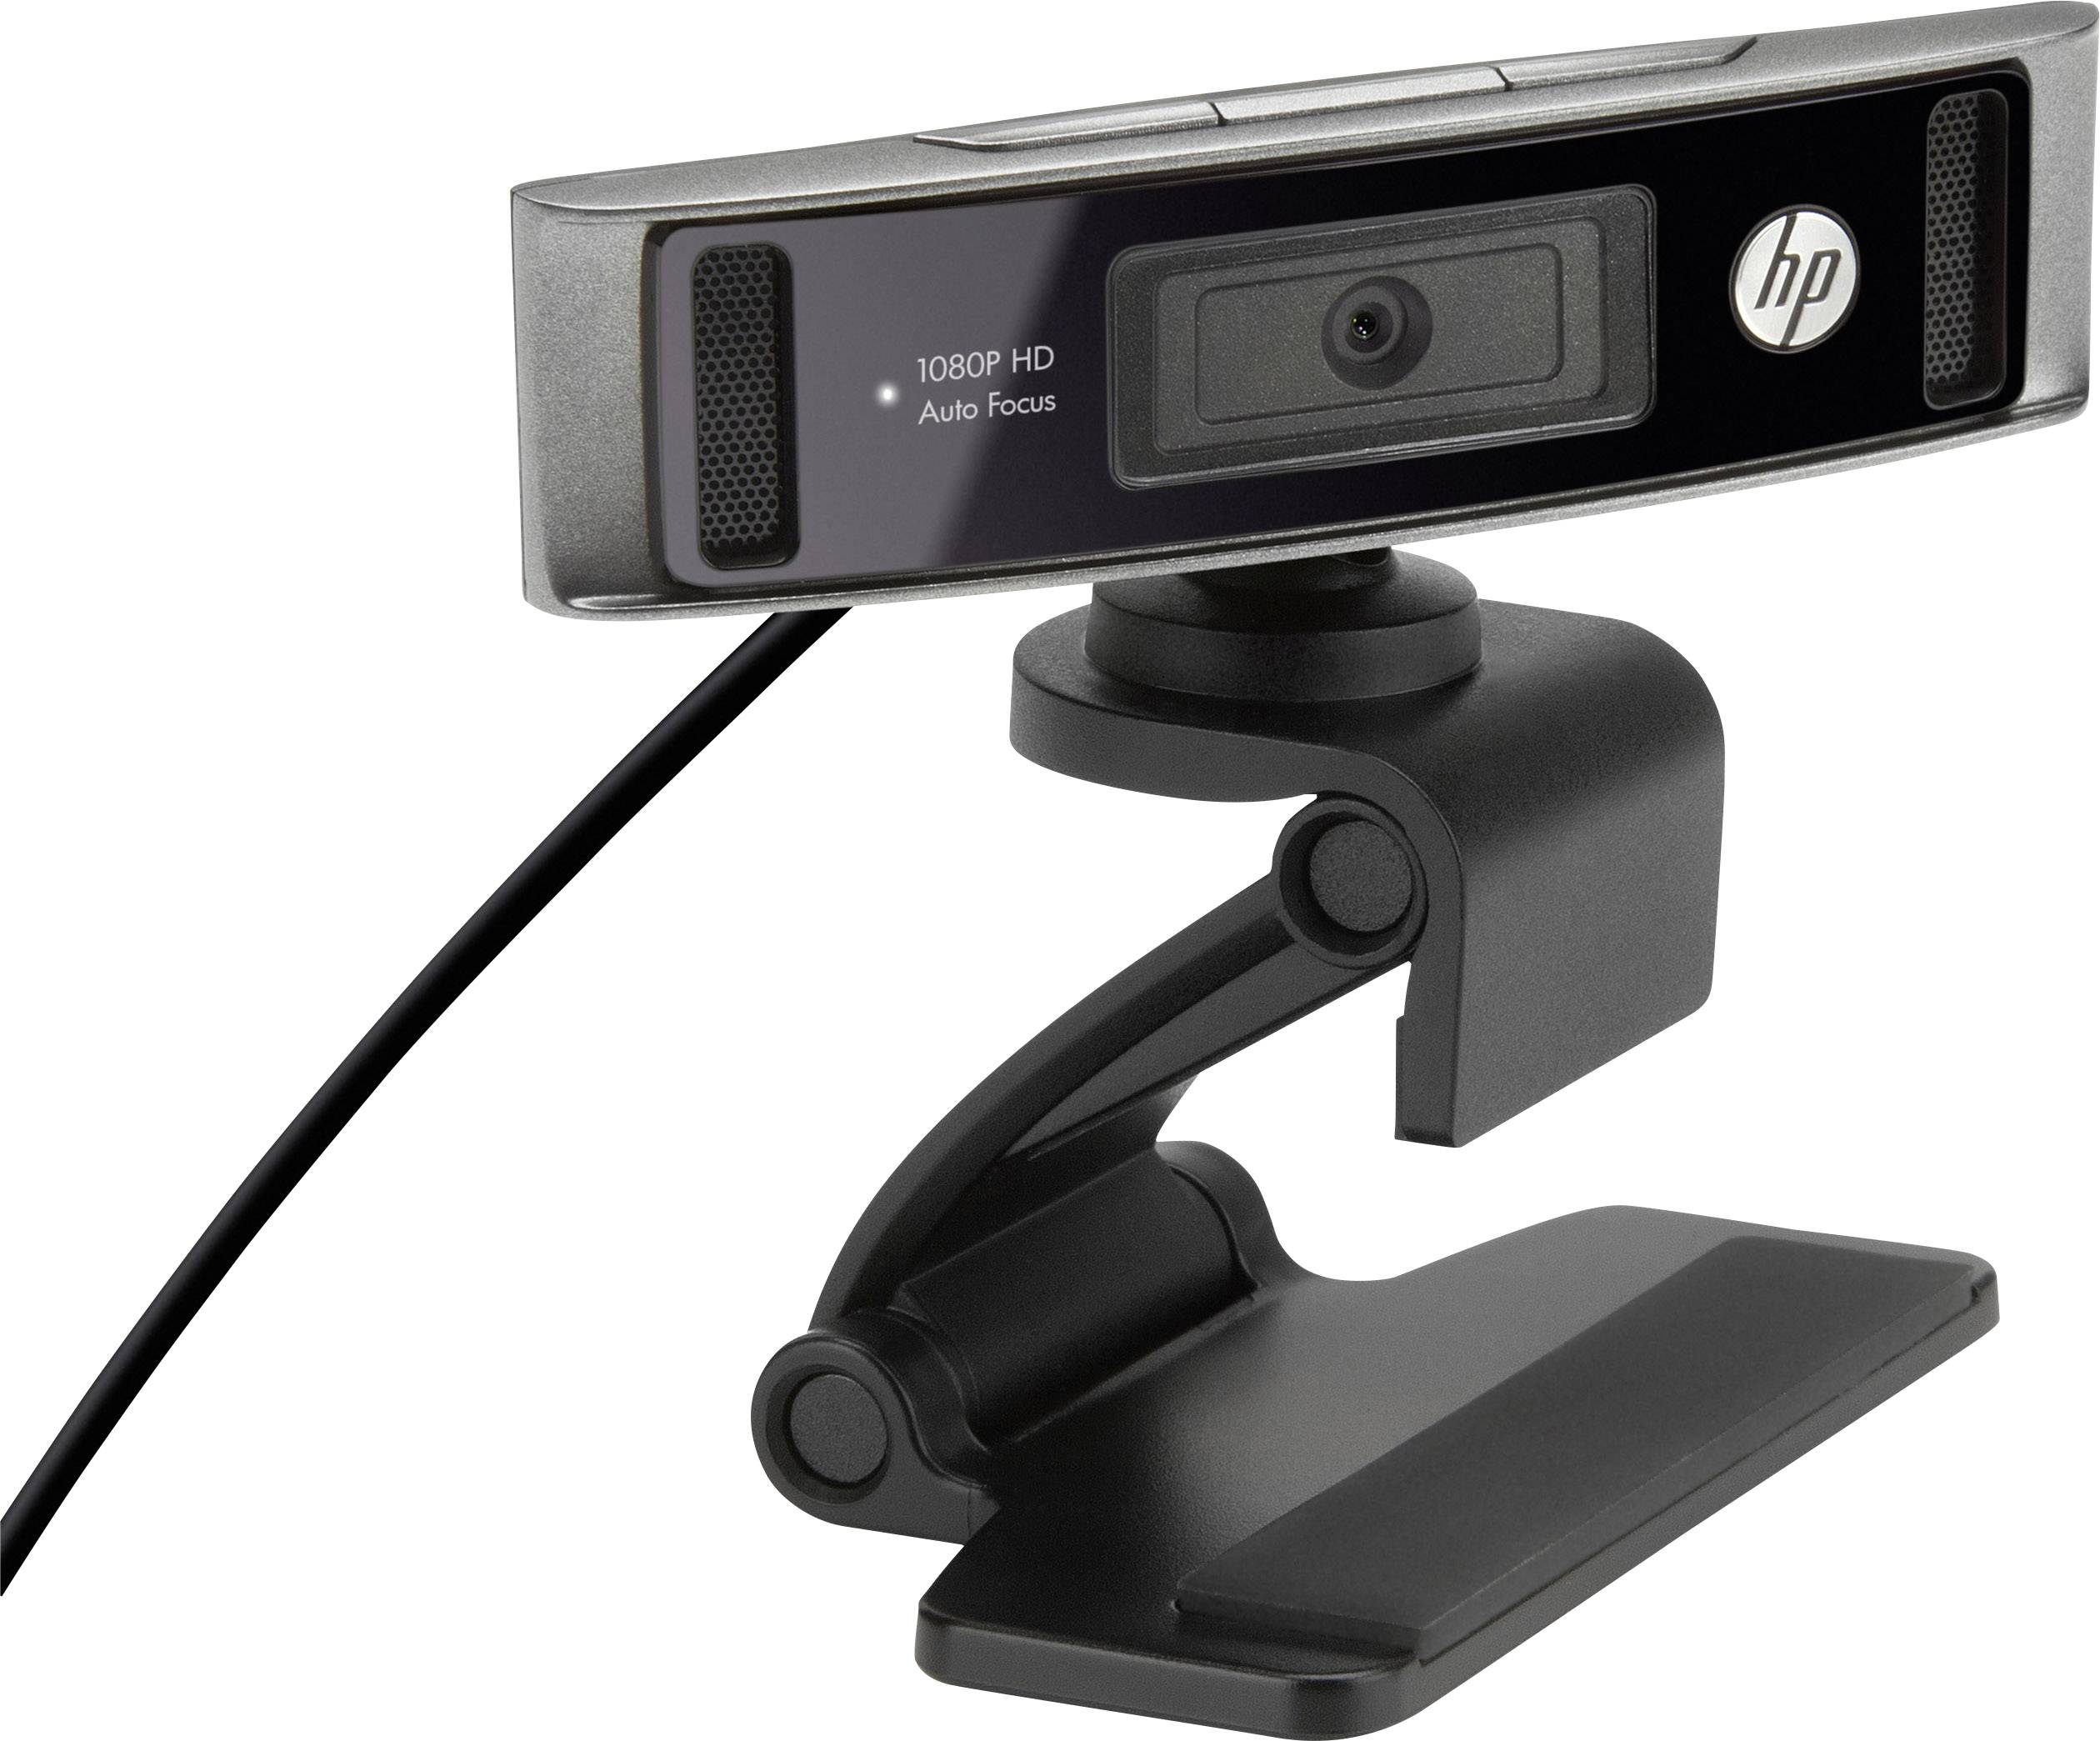 hp truevision hd webcam specs